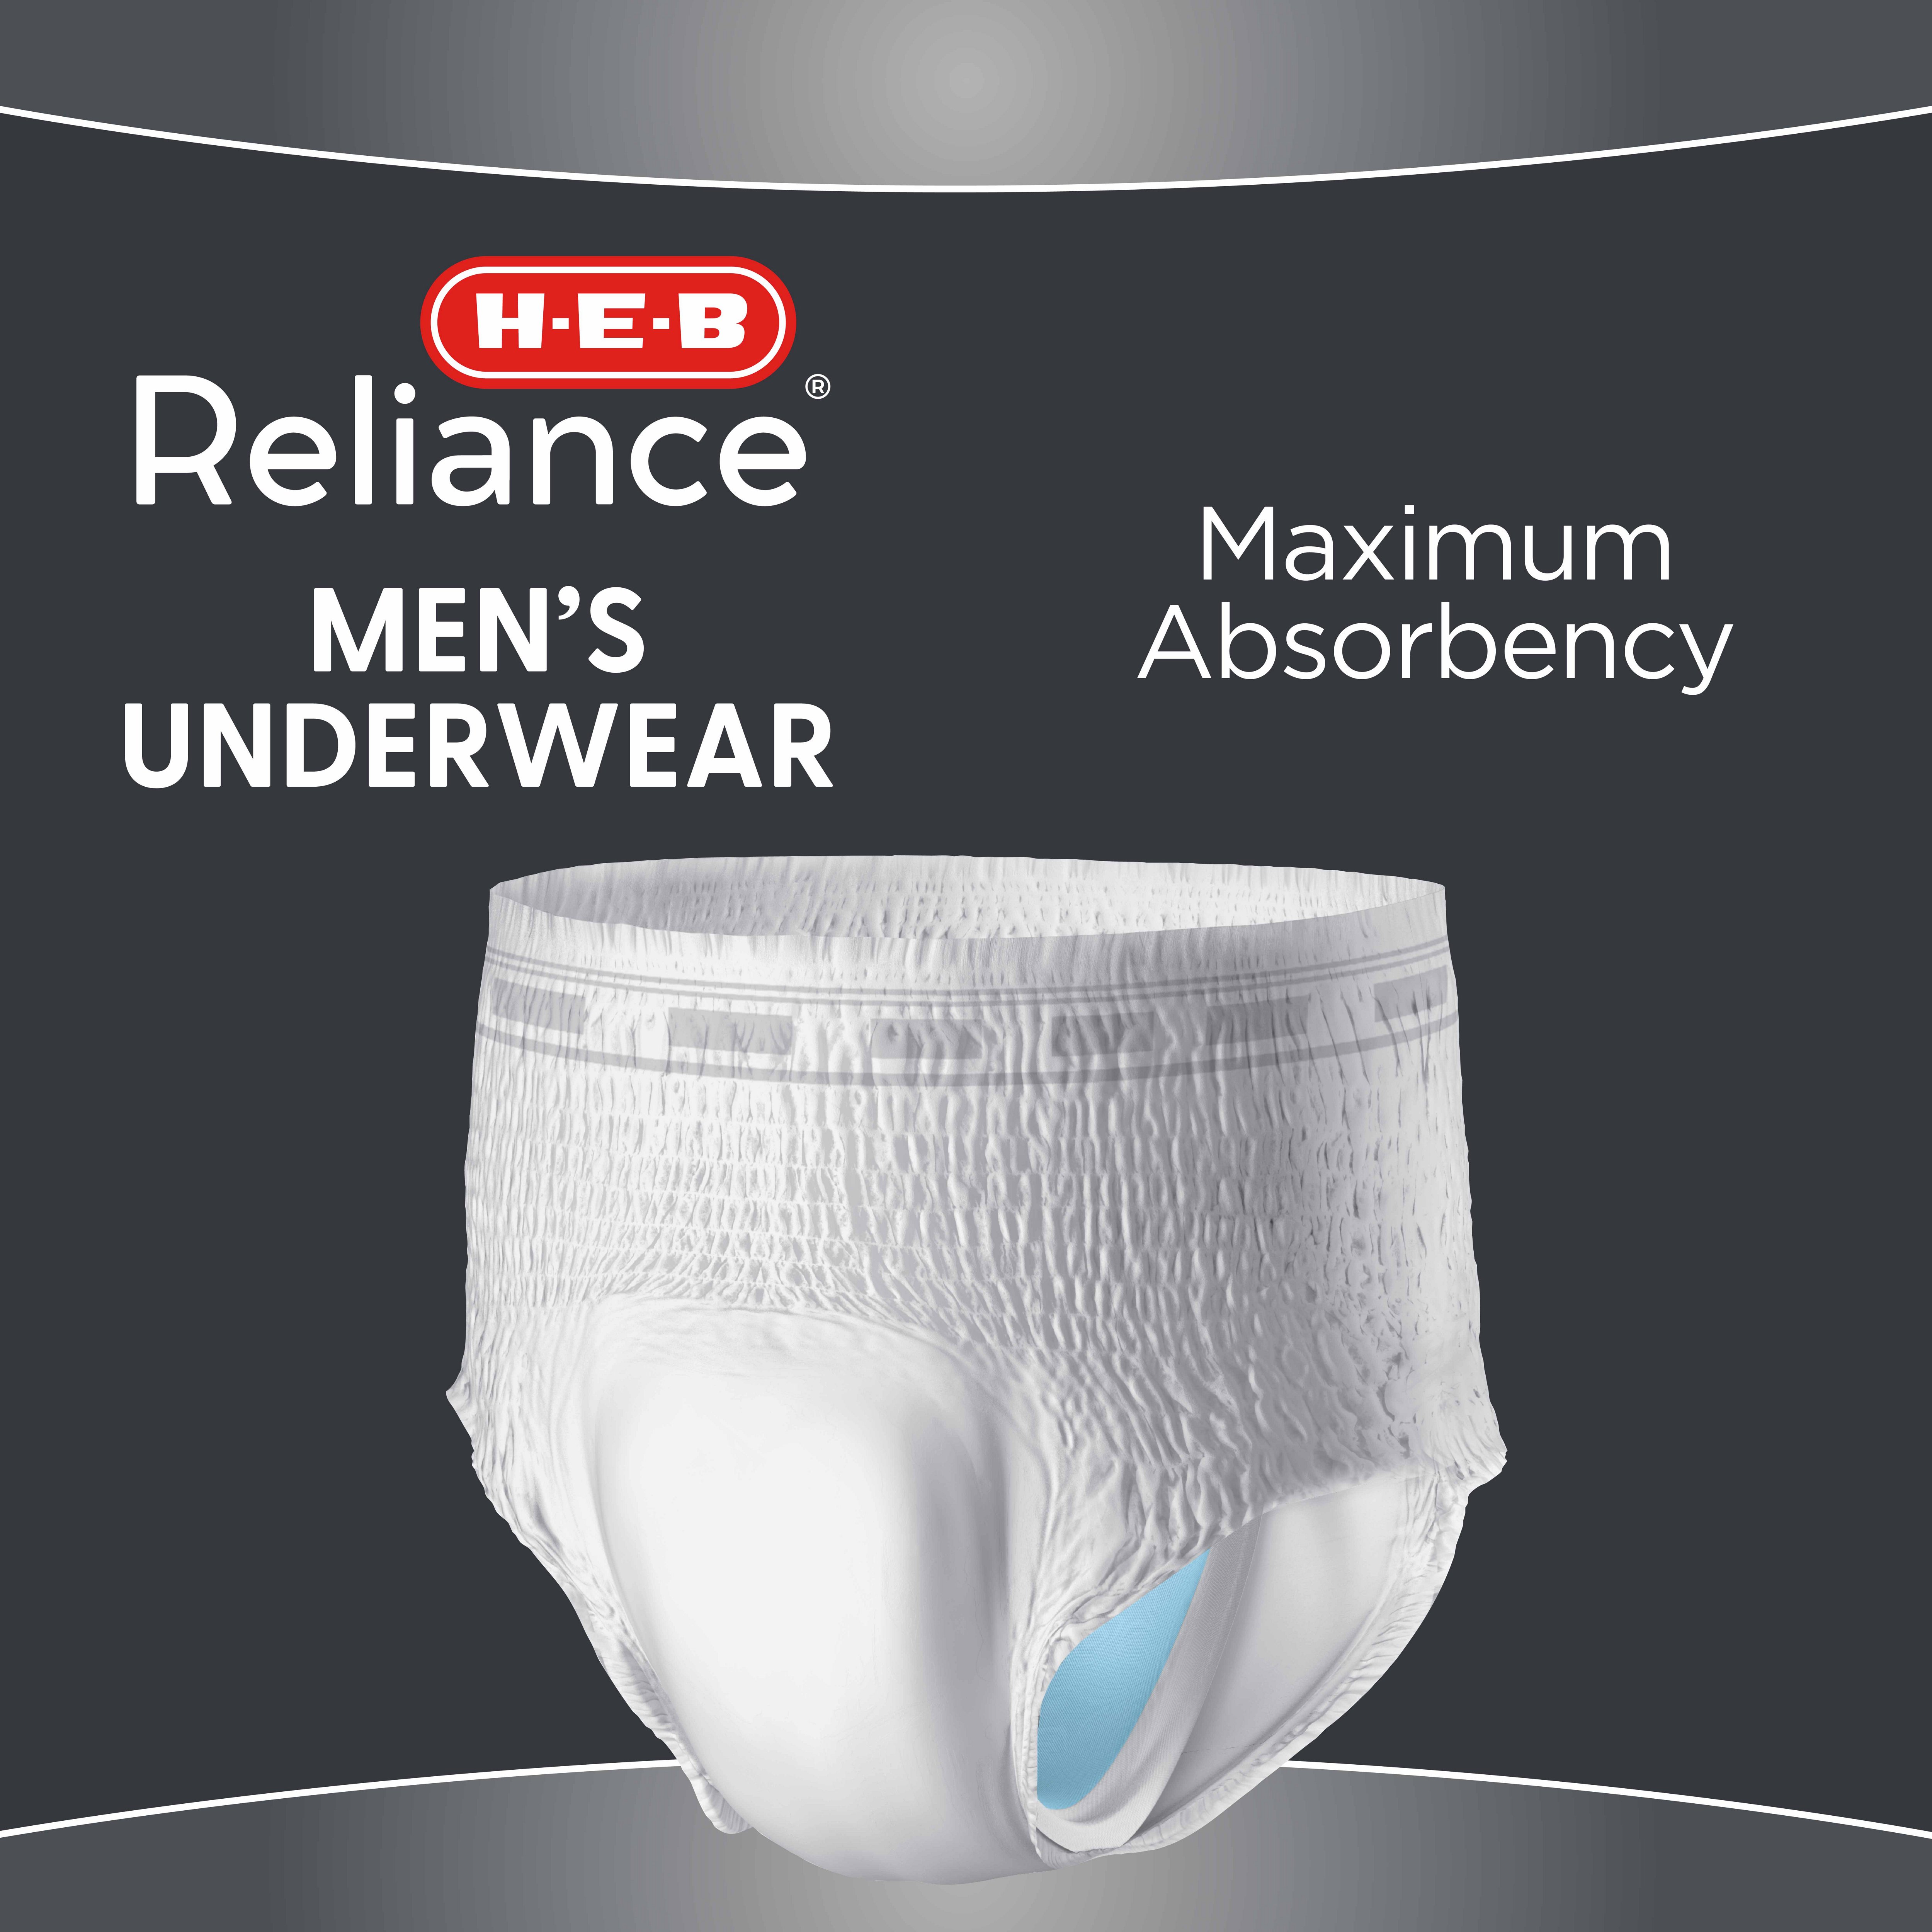 H-E-B Reliance Premium Women's Underwear L/XL - Shop Incontinence